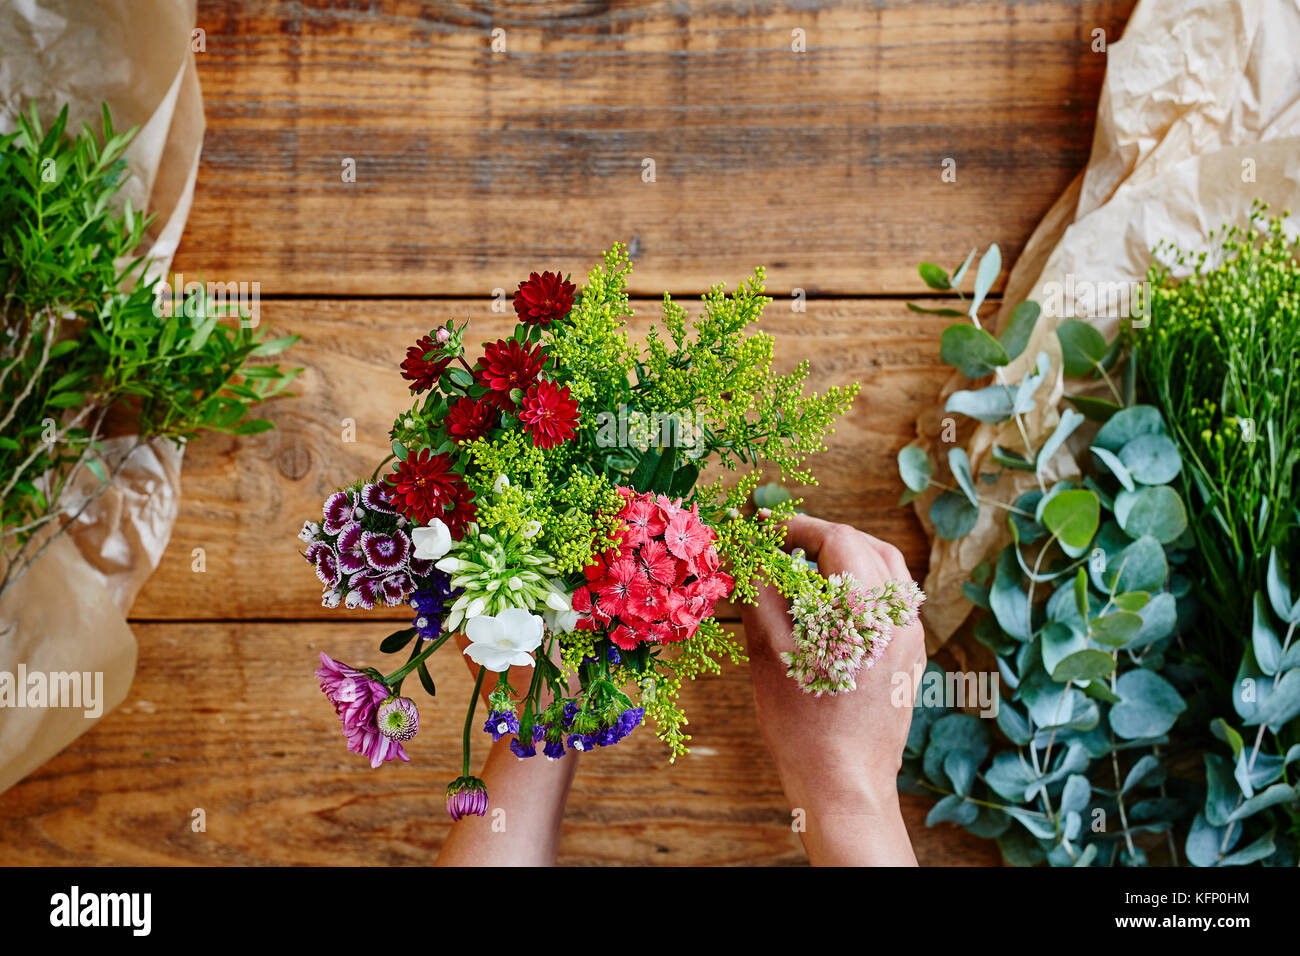 hands binding a wild flower bouquet flowershop Stock Photo - Alamy